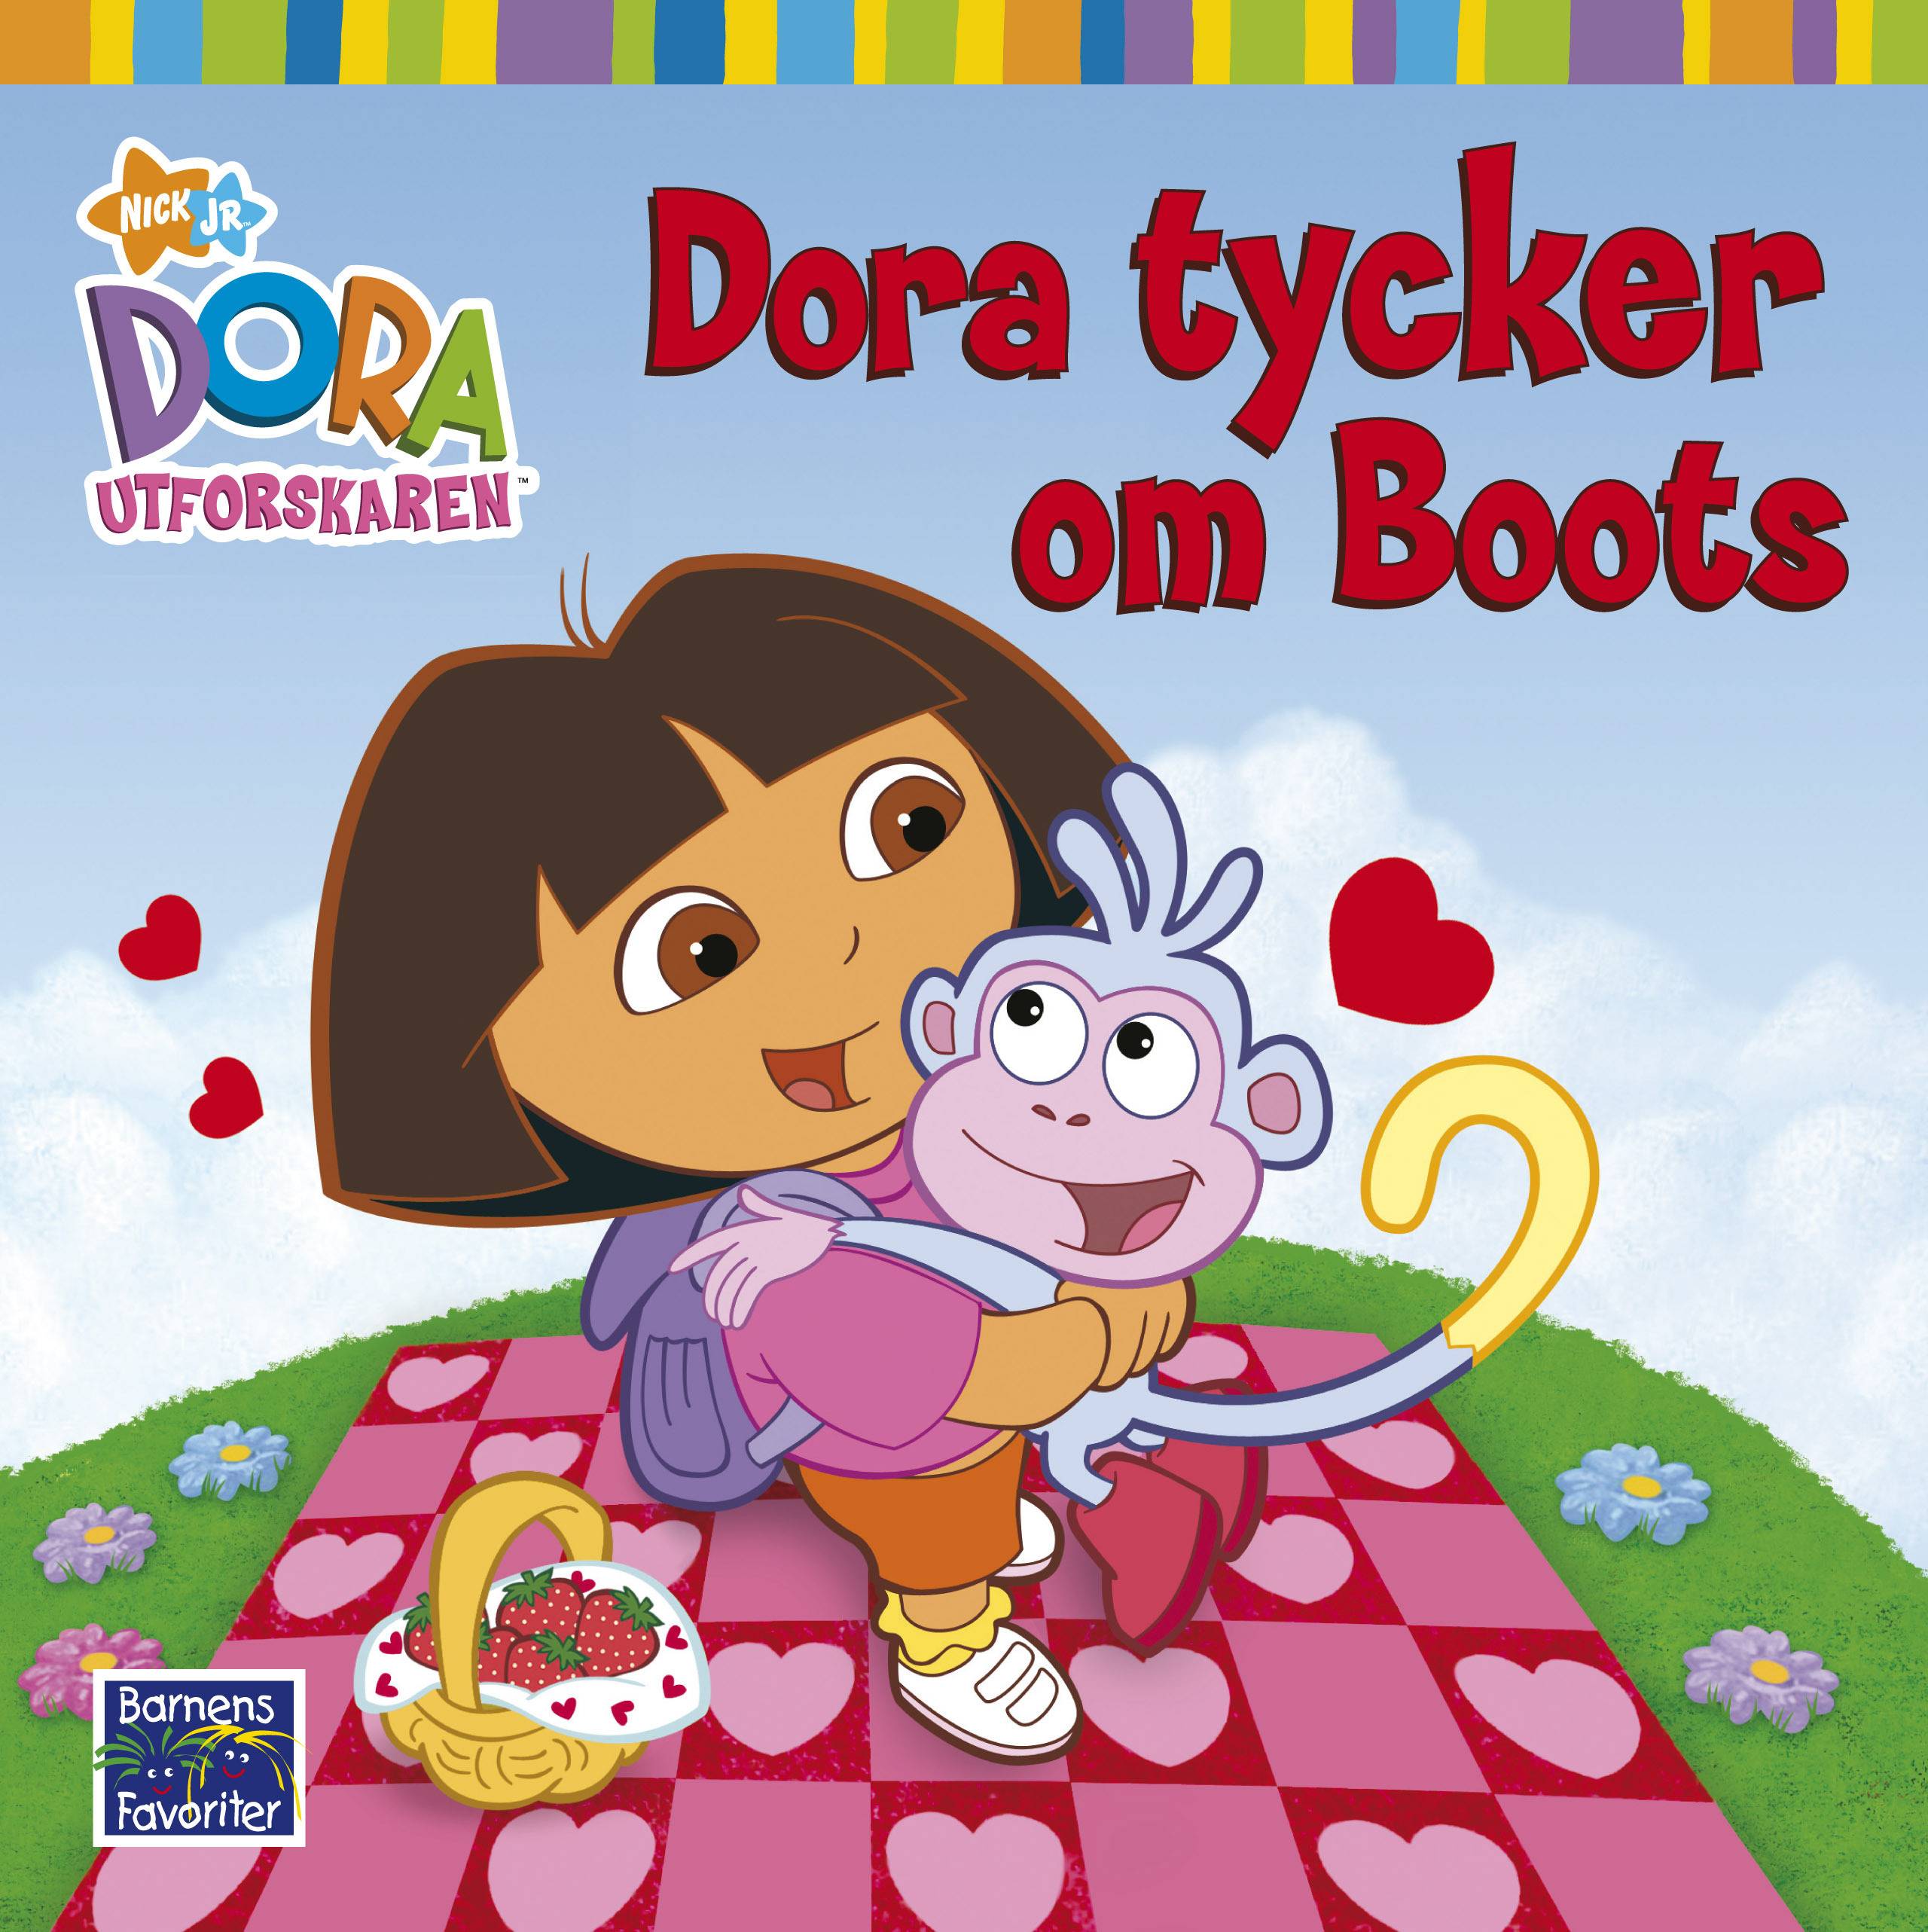 Dora utforskaren - Dora tycker om Boots